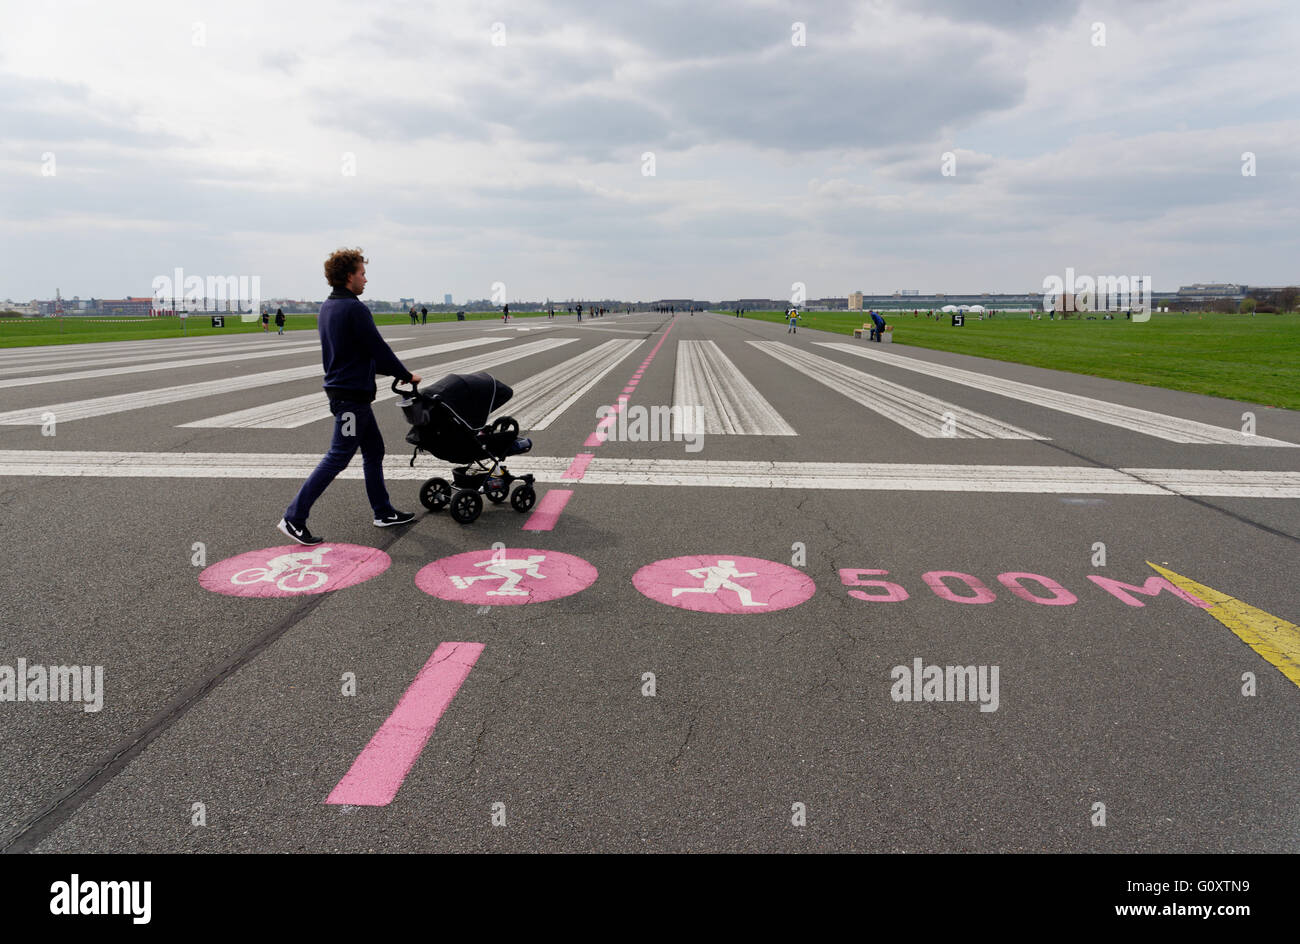 Un homme poussant une poussette sur la piste de l'aérodrome de Tempelhof park à Berlin, Allemagne Banque D'Images